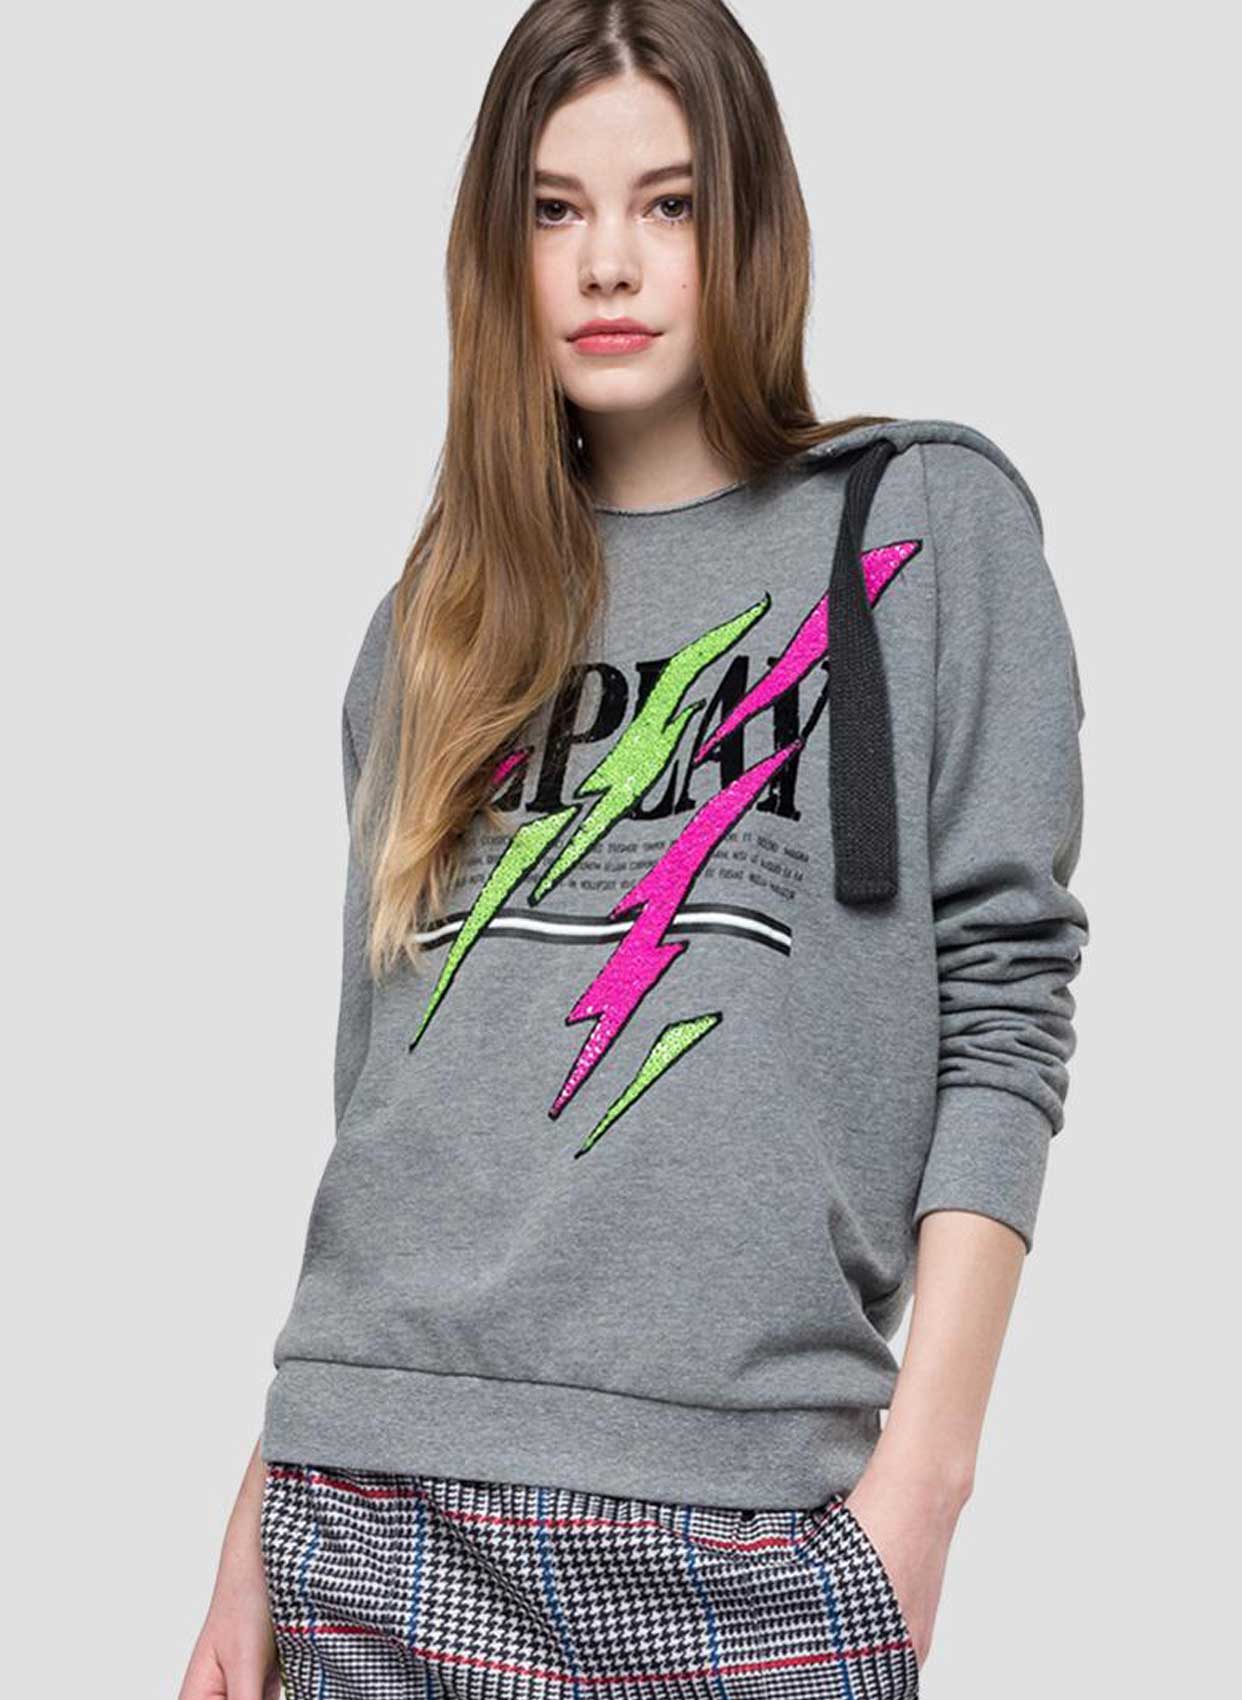 Replay Sweatshirt-Libas Trendy Fashion Store